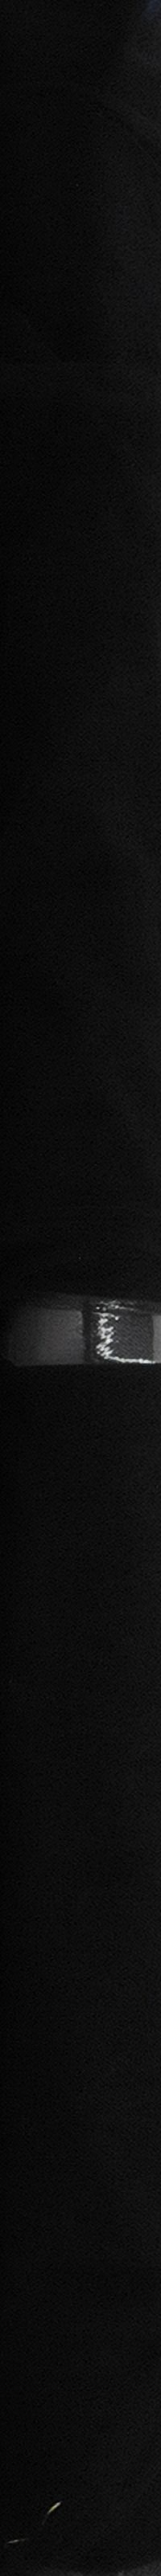 Mandel Sparkle Tulle Black - image 3 of 5